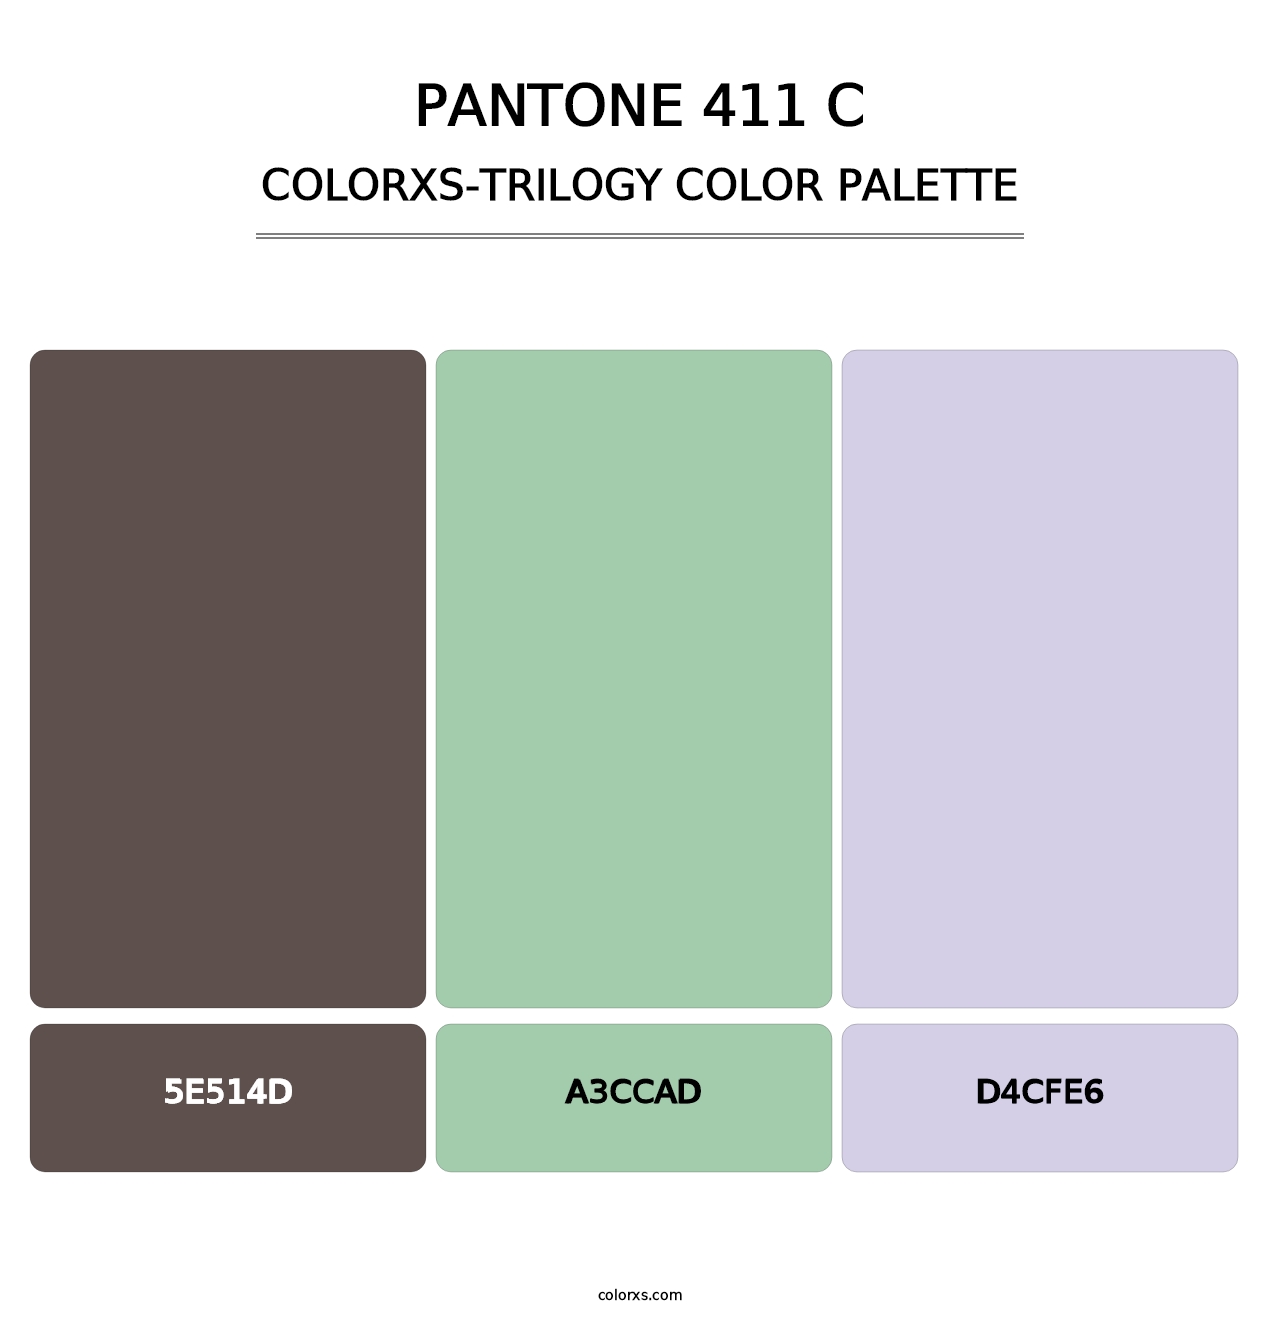 PANTONE 411 C - Colorxs Trilogy Palette